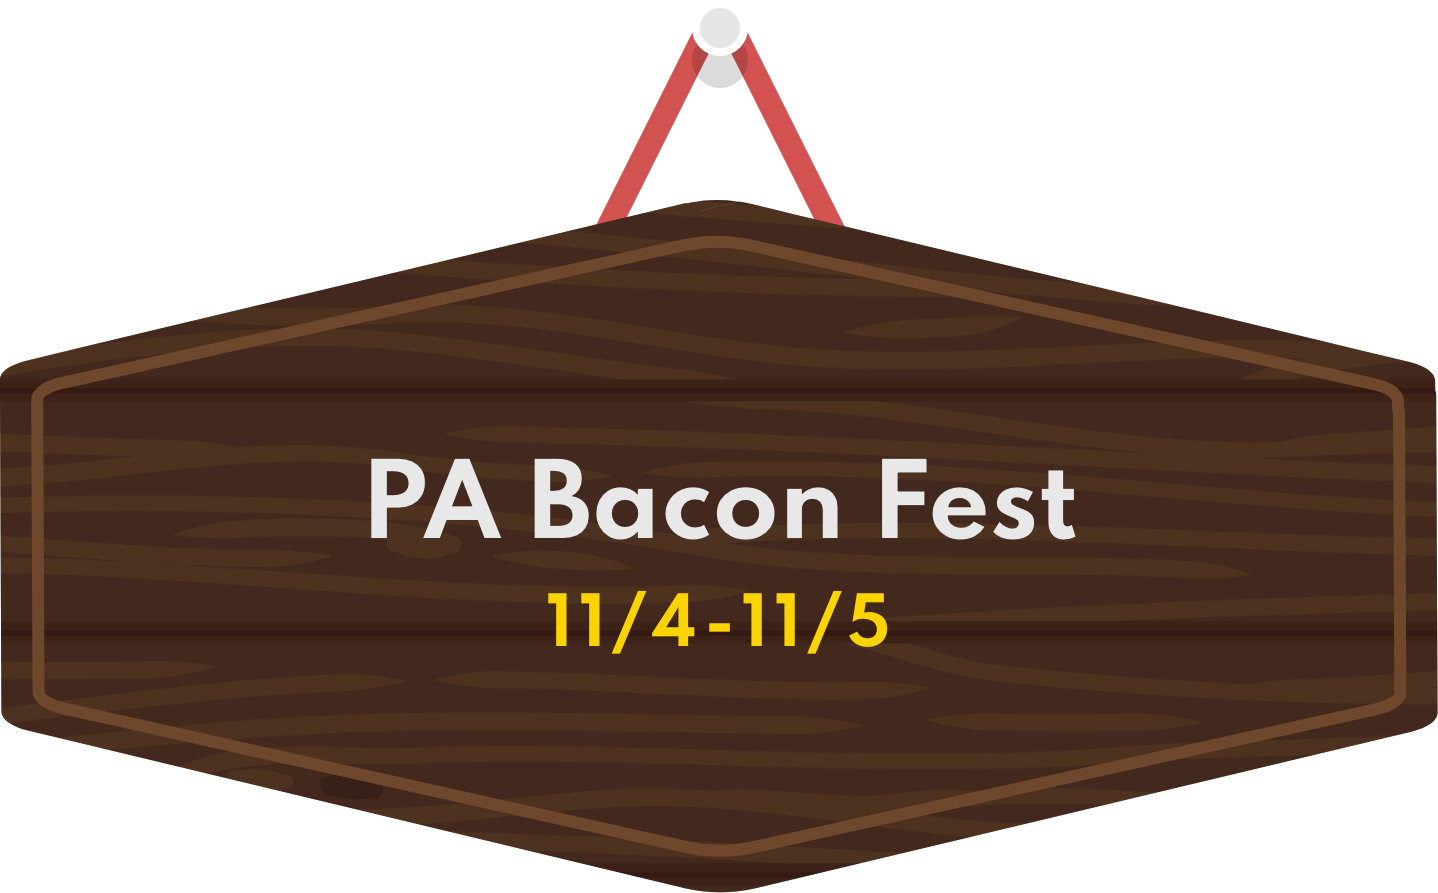 PA Bacon Fest 11/4-11/5